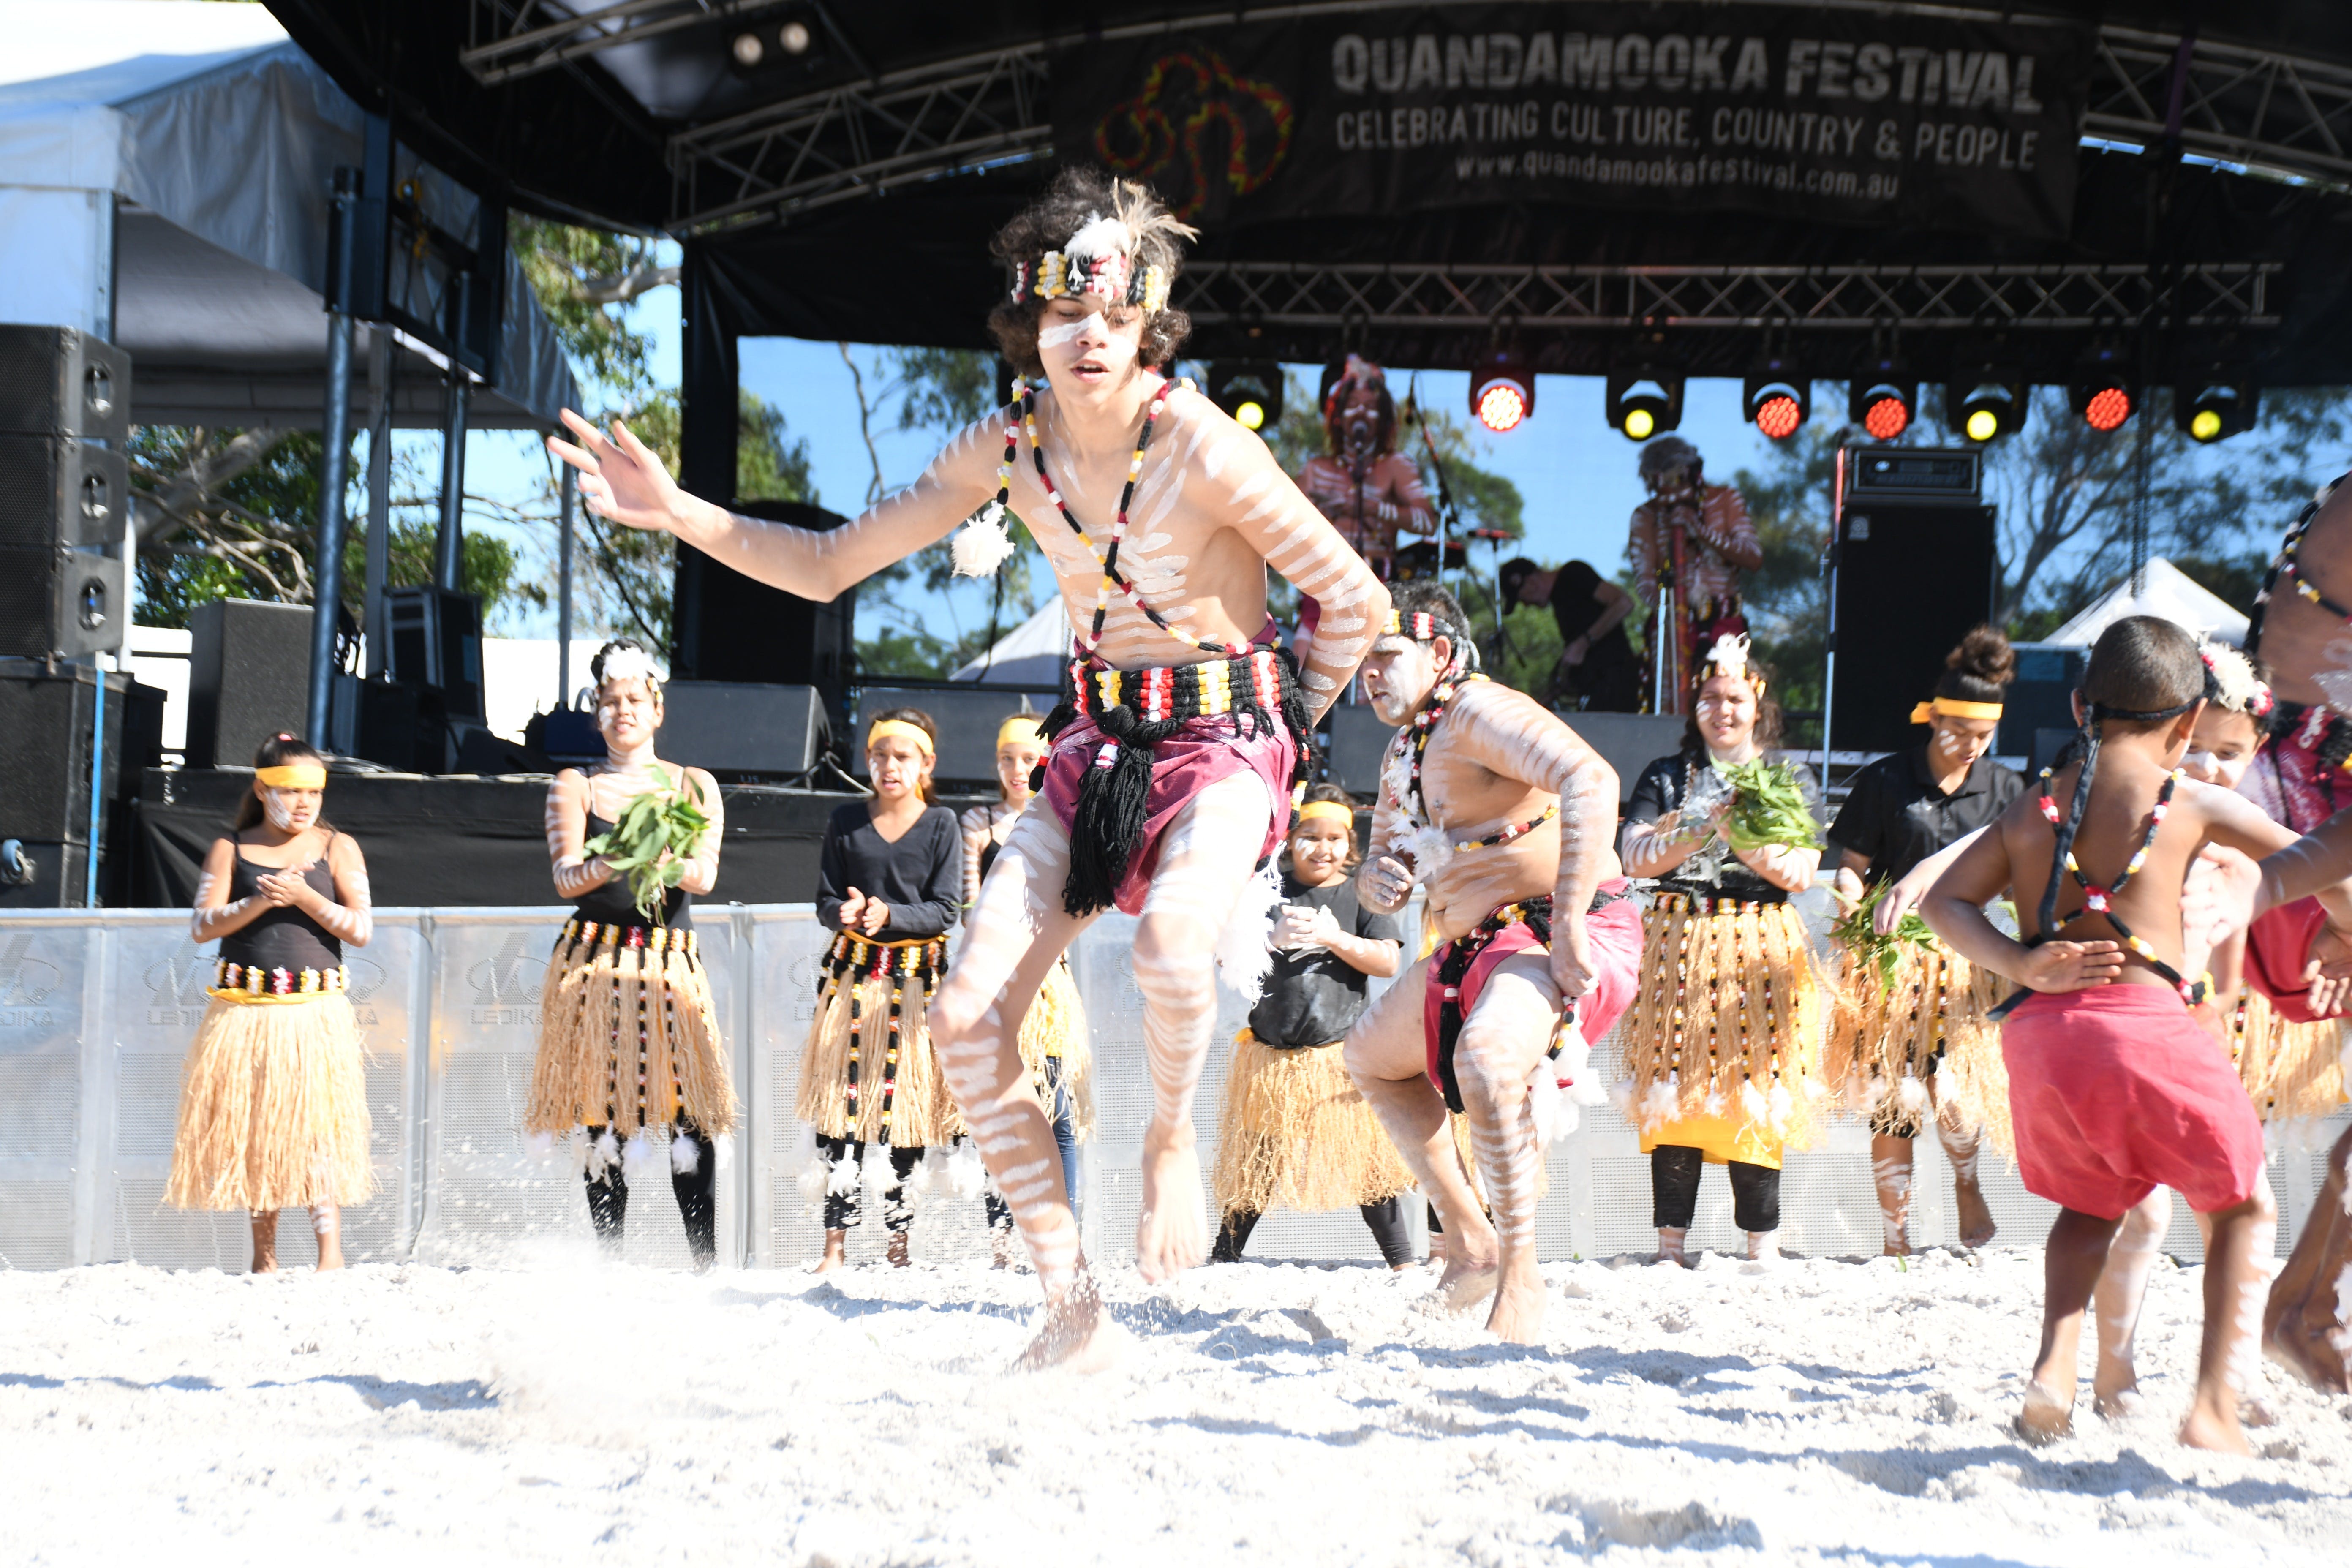 Quandamooka Festival 2021 - Yamba Accommodation